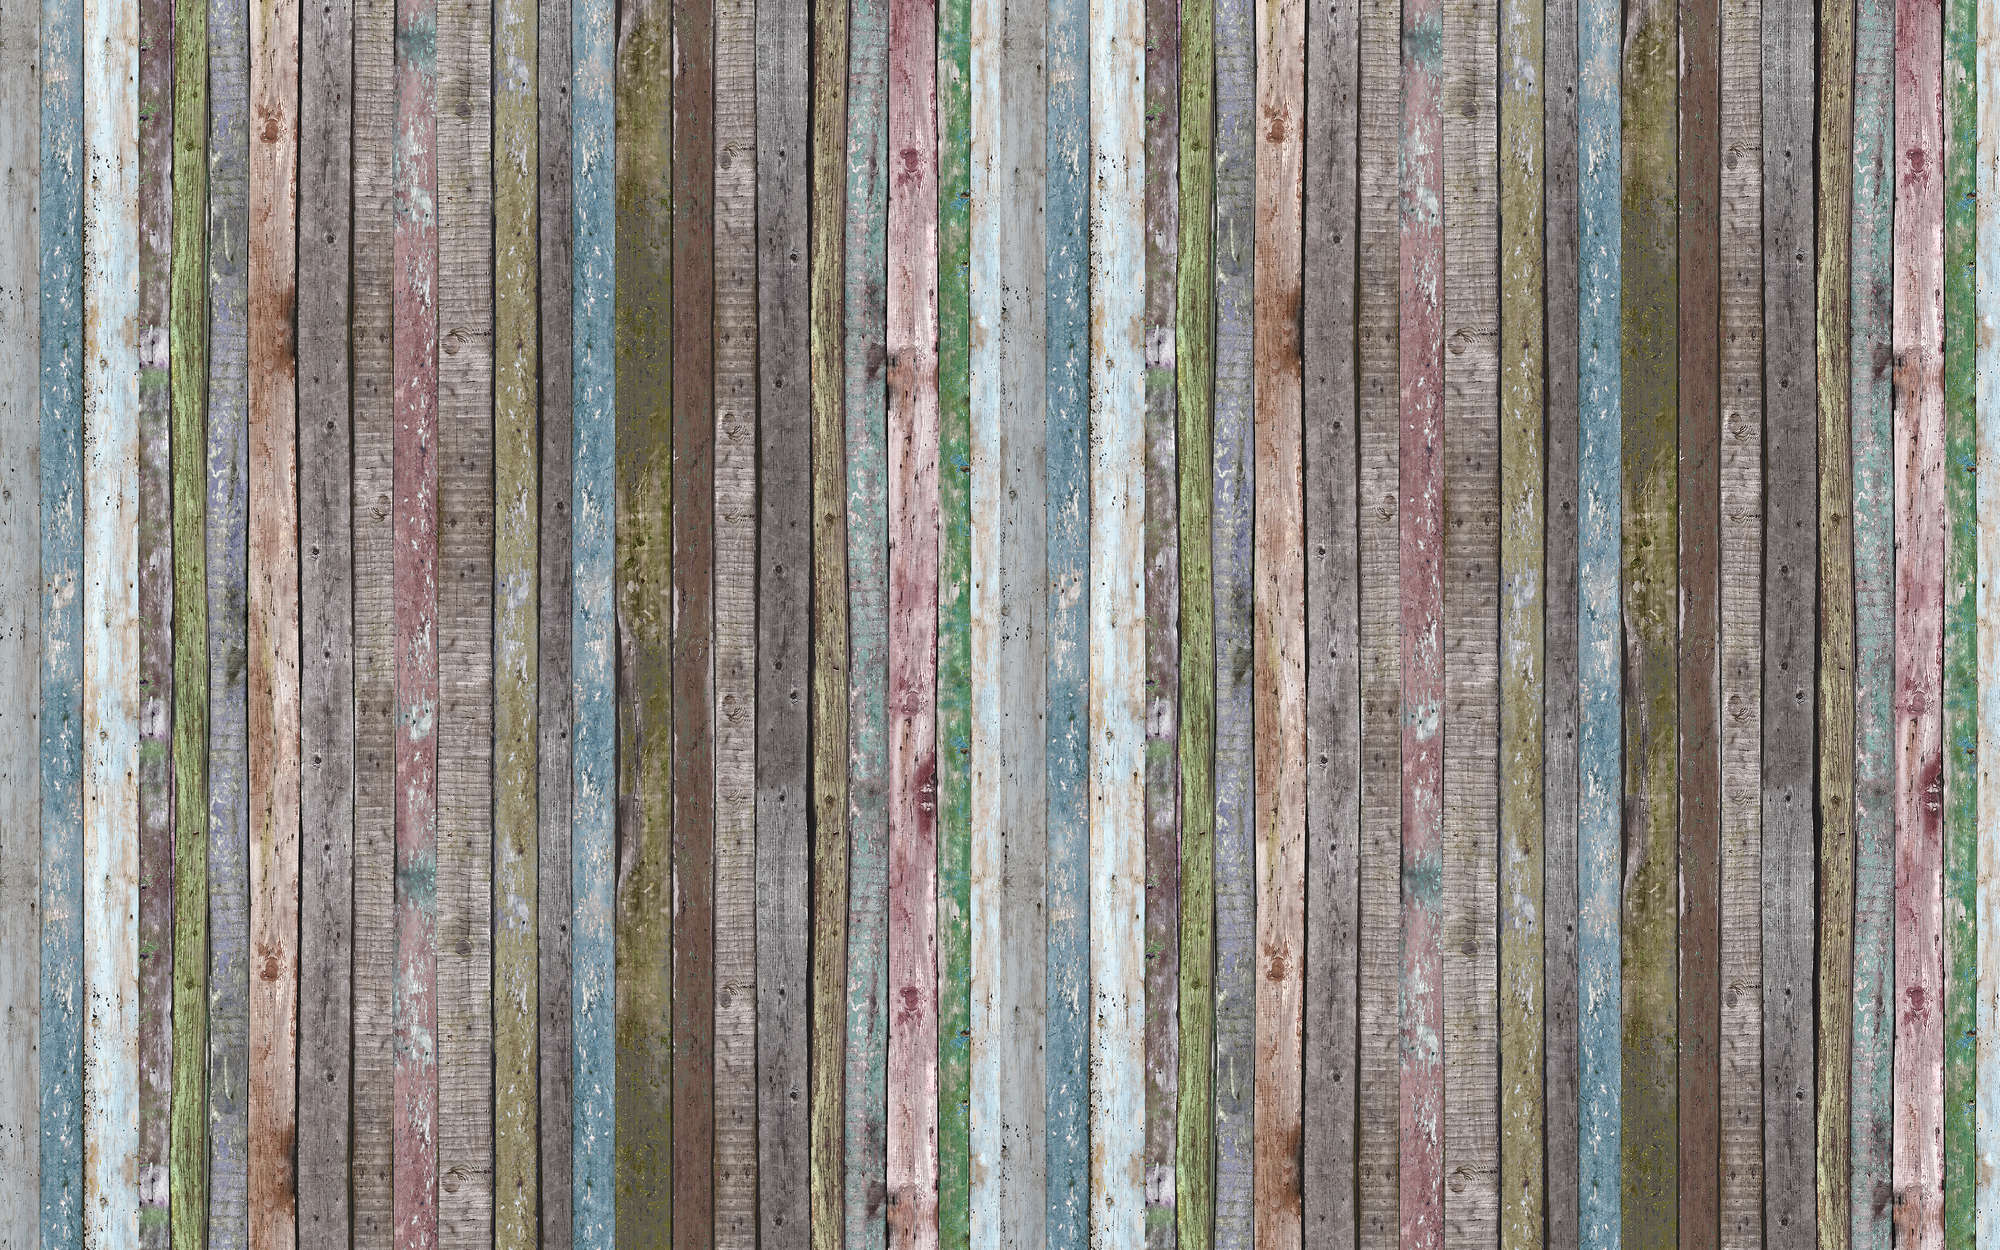             papiers peints à impression numérique Poutres striées en bois - intissé lisse mat
        